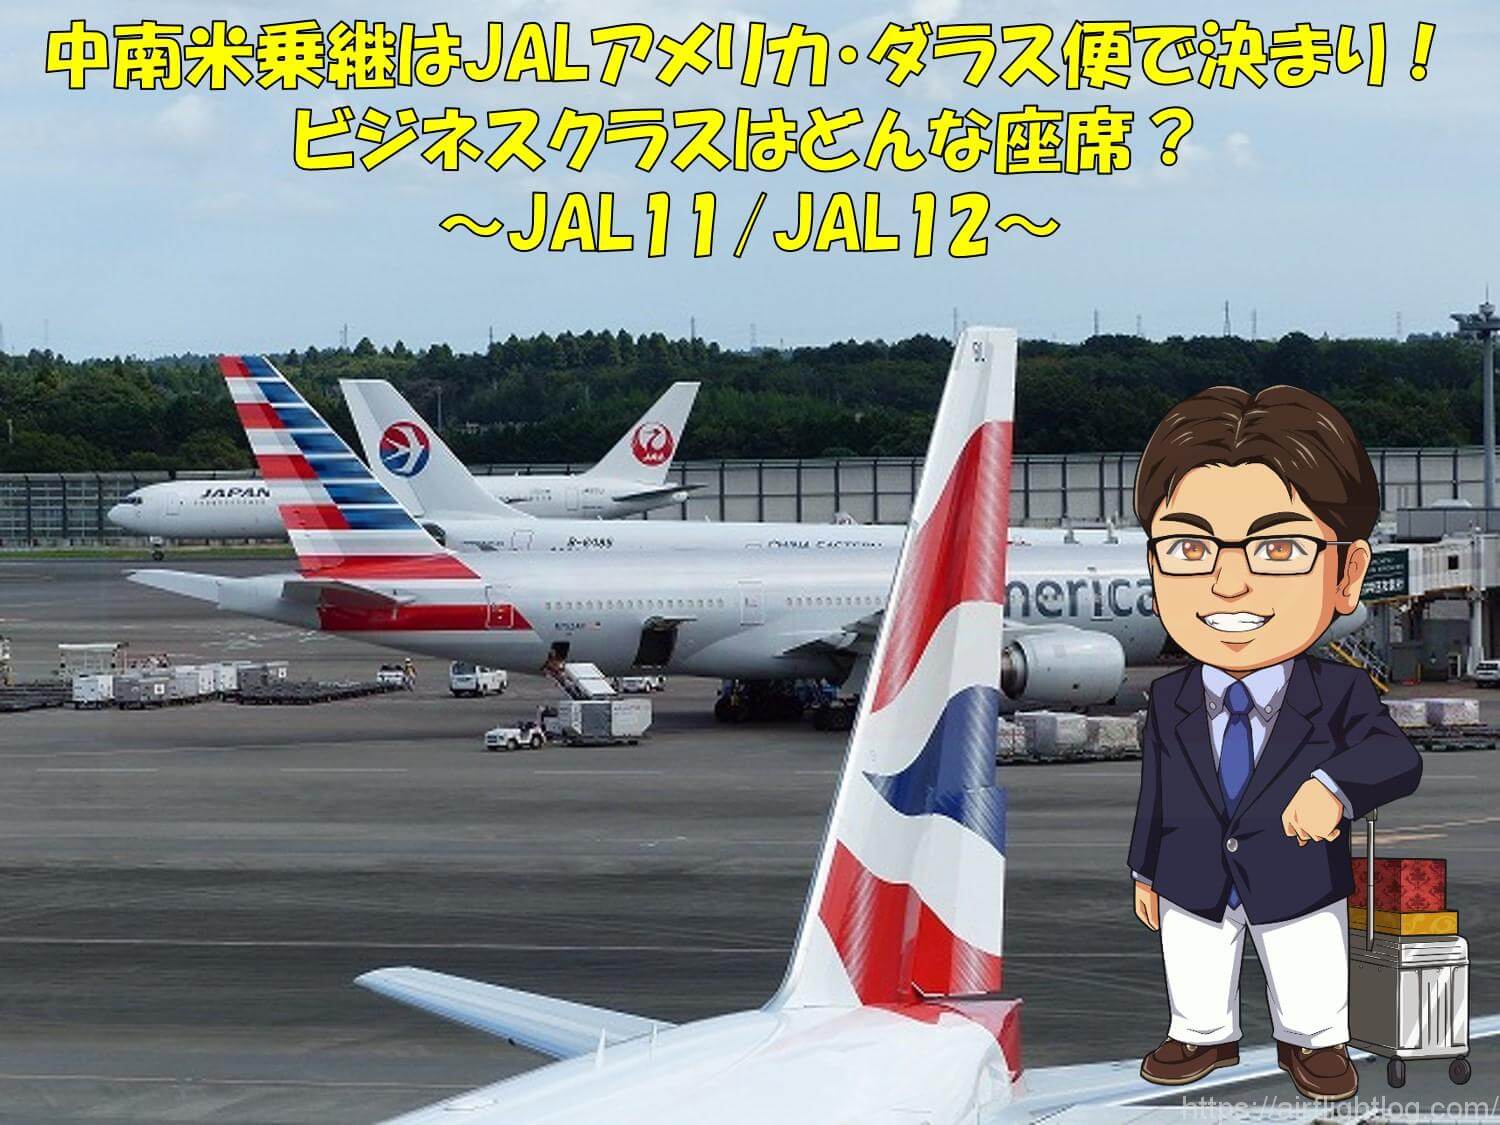 Jalアメリカ ダラス便に乗って中南米乗継が便利 ビジネスクラスはどんな座席 Yujiのフライトログ